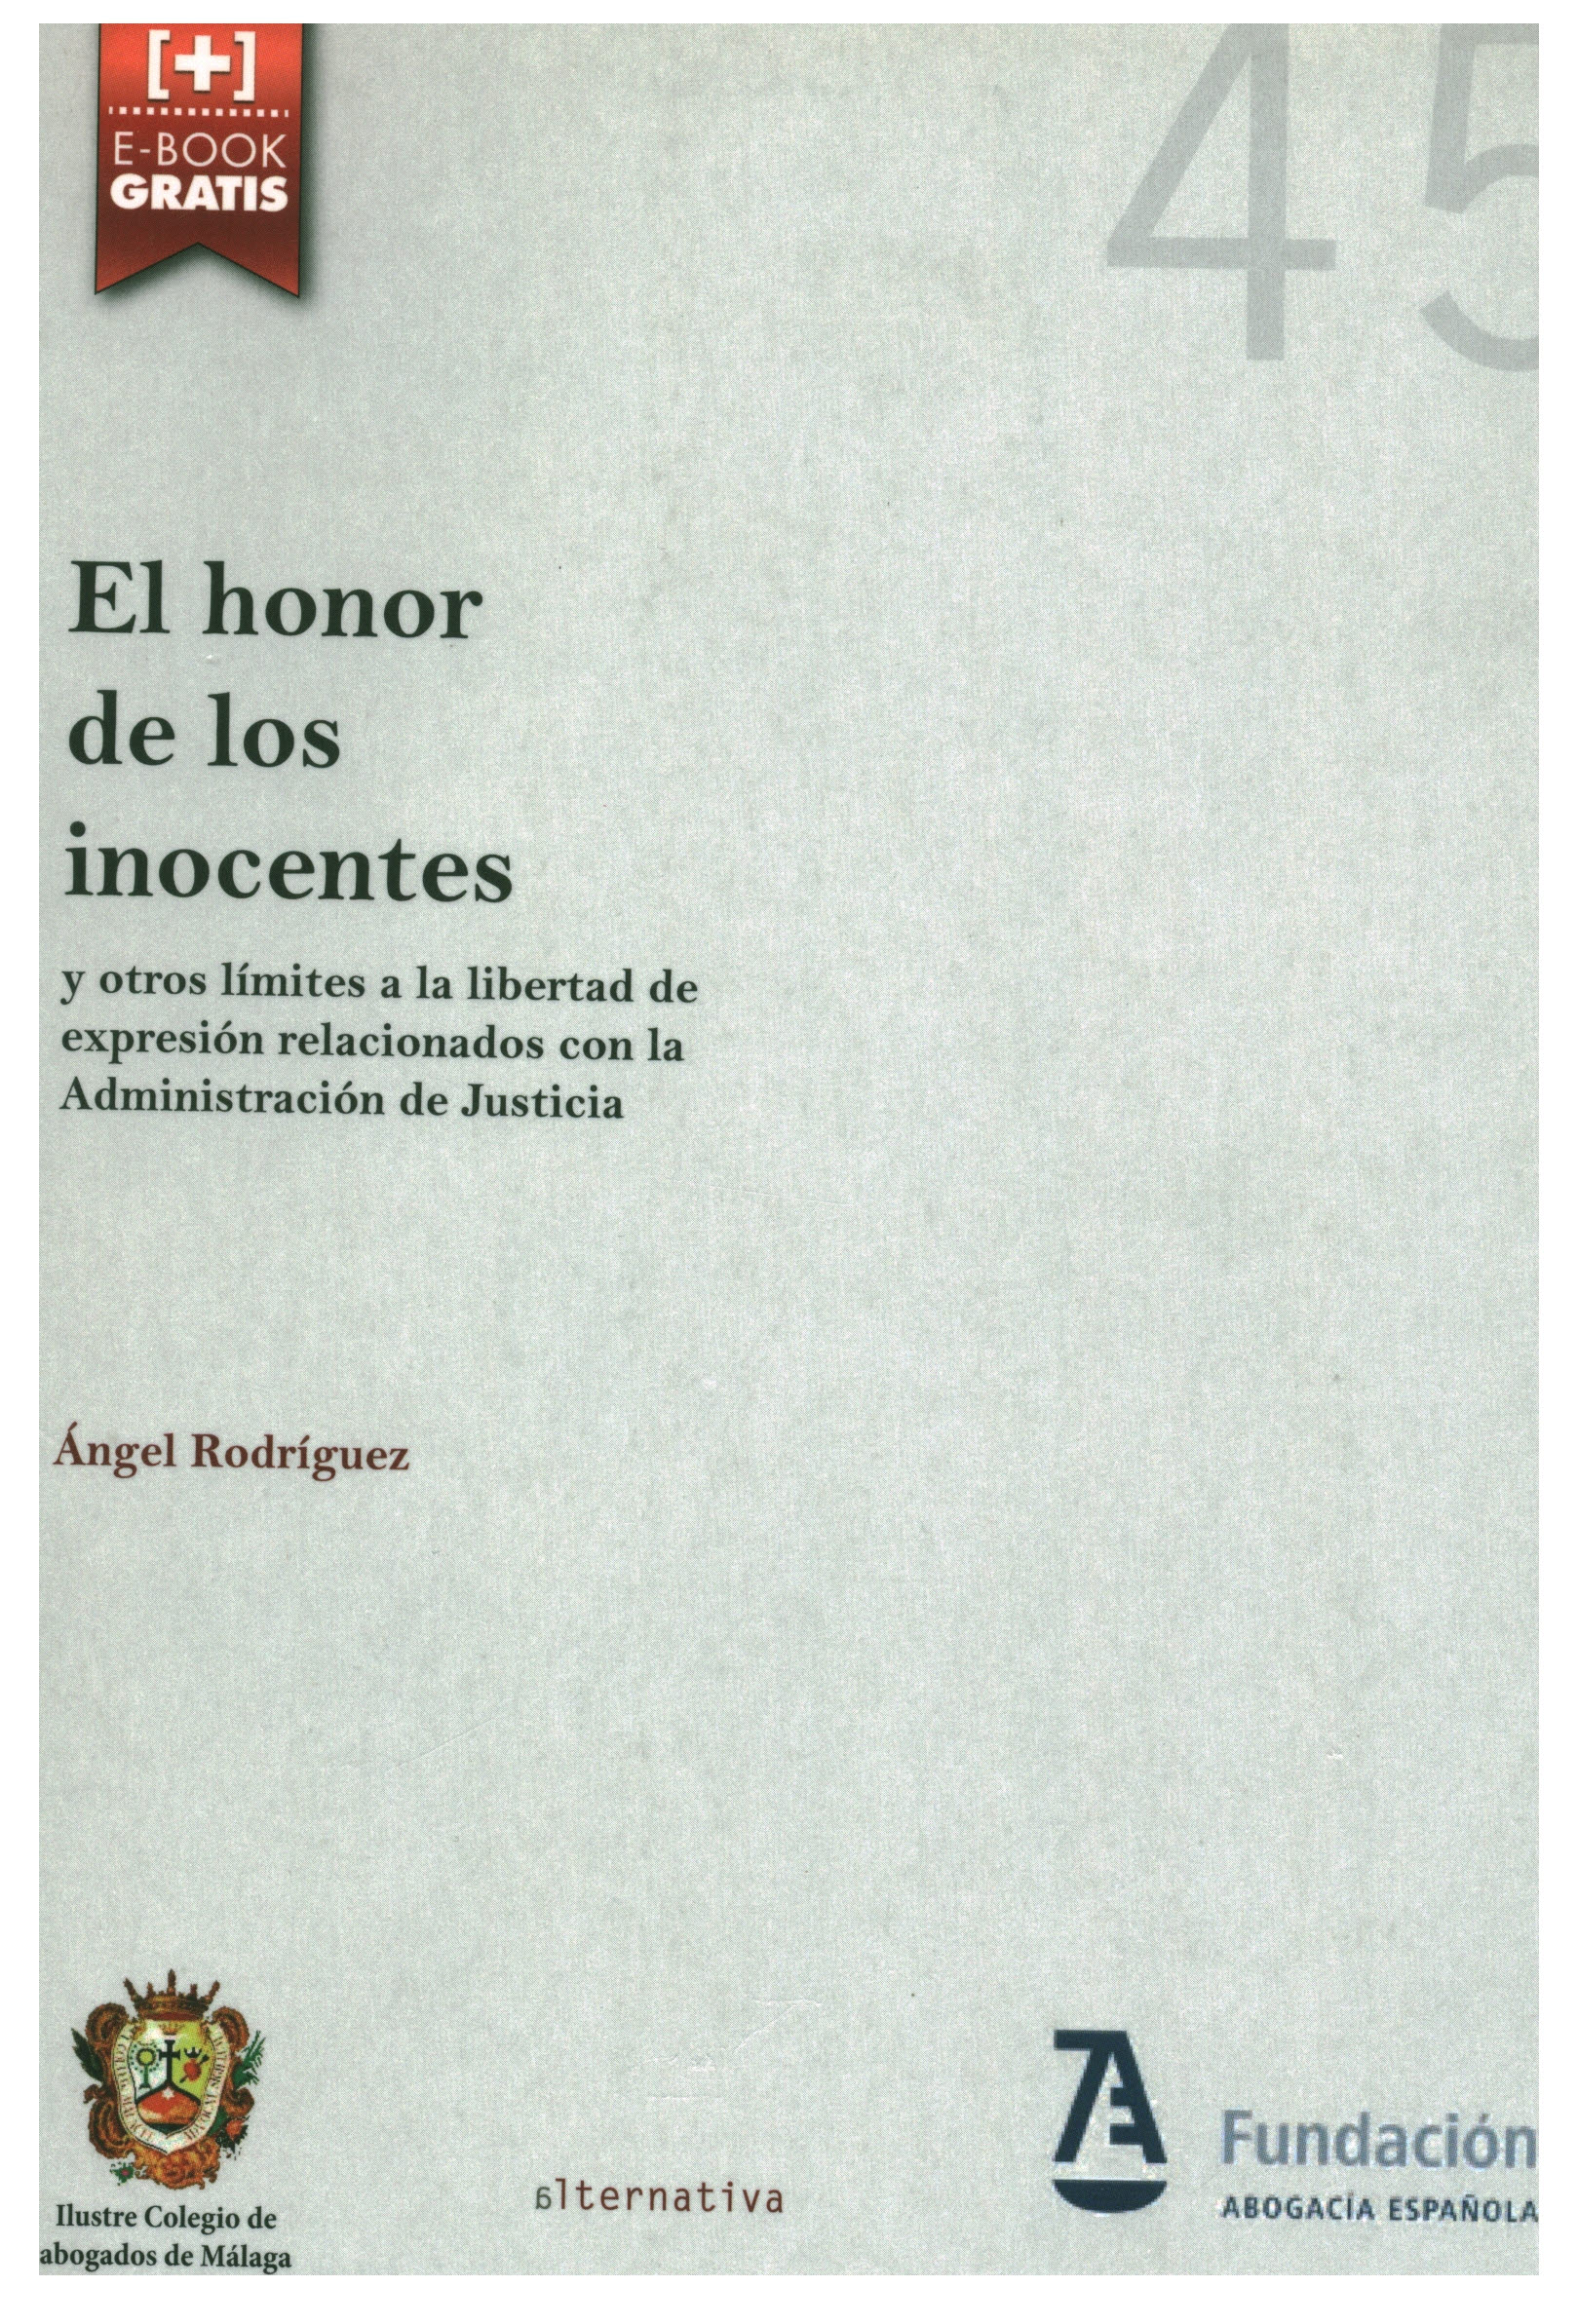 El honor de los inocentes. Y otros límites a la libertad de expresión relacionados con la administración de la justicia